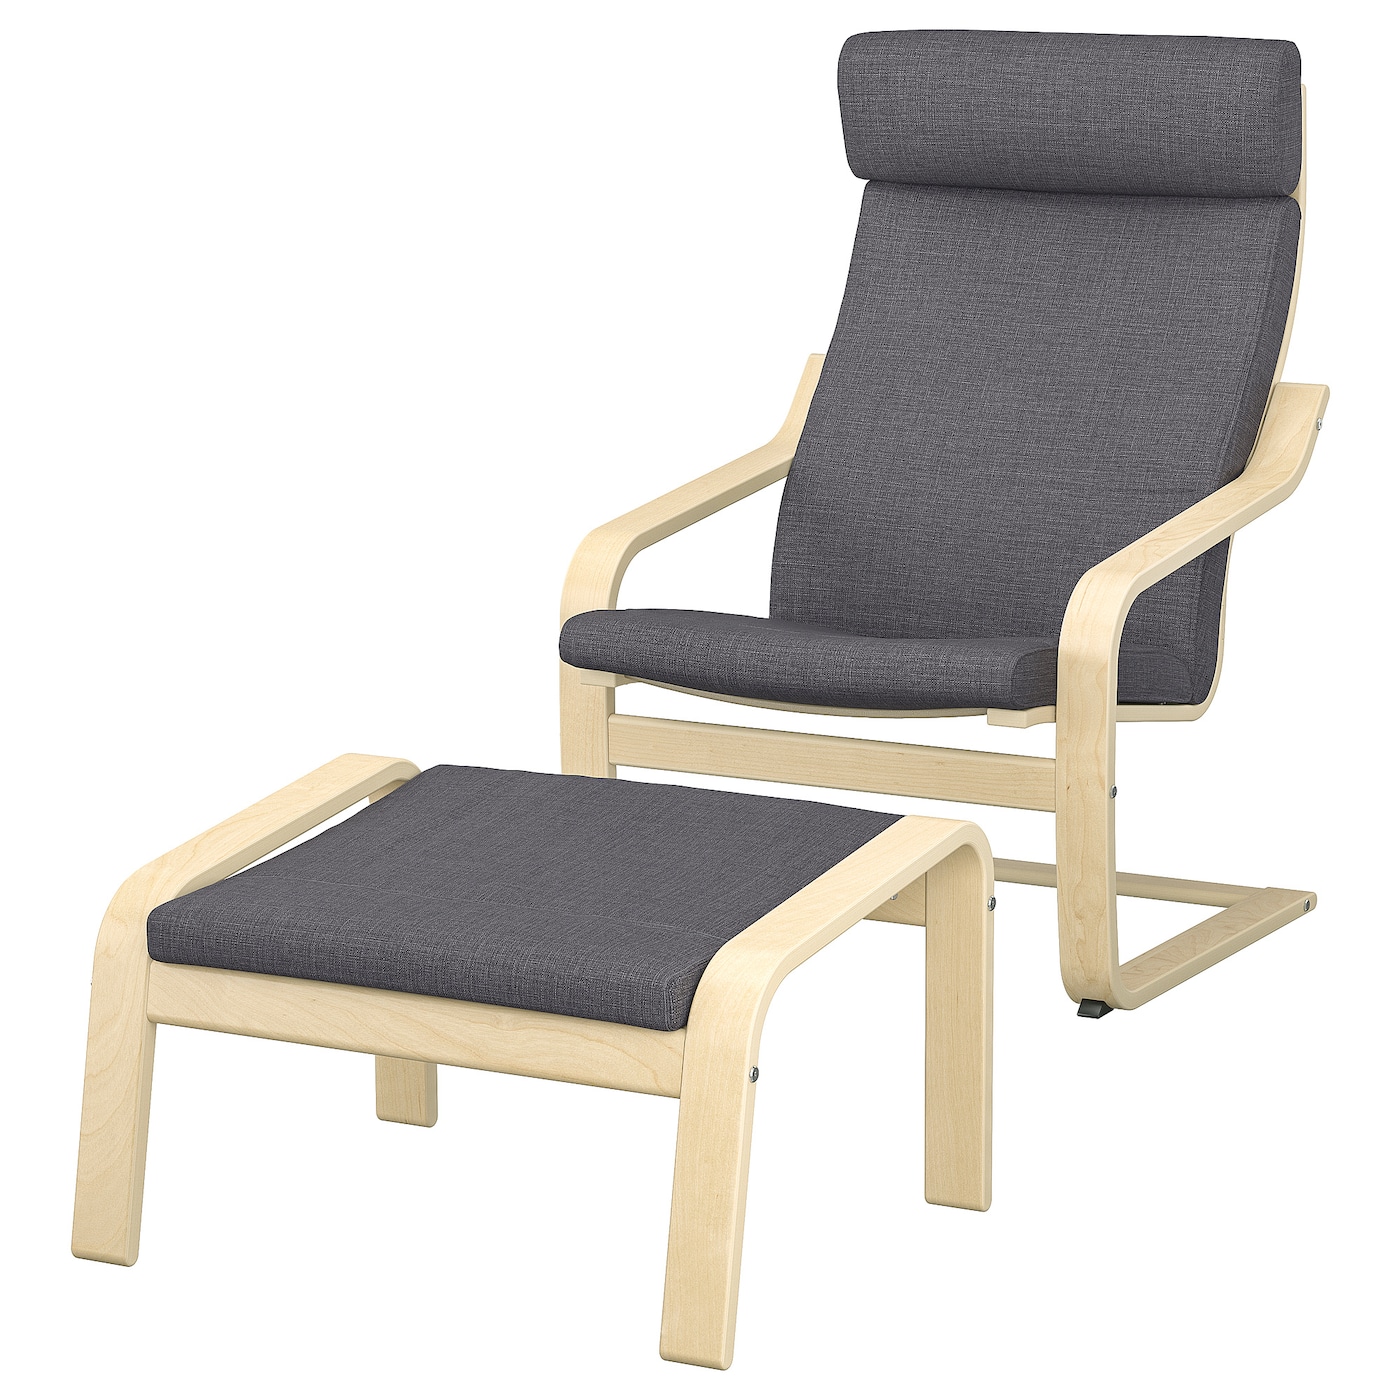 ПОЭНГ Кресло и подставка для ног, березовый шпон/Скифтебо темно-серый POÄNG IKEA